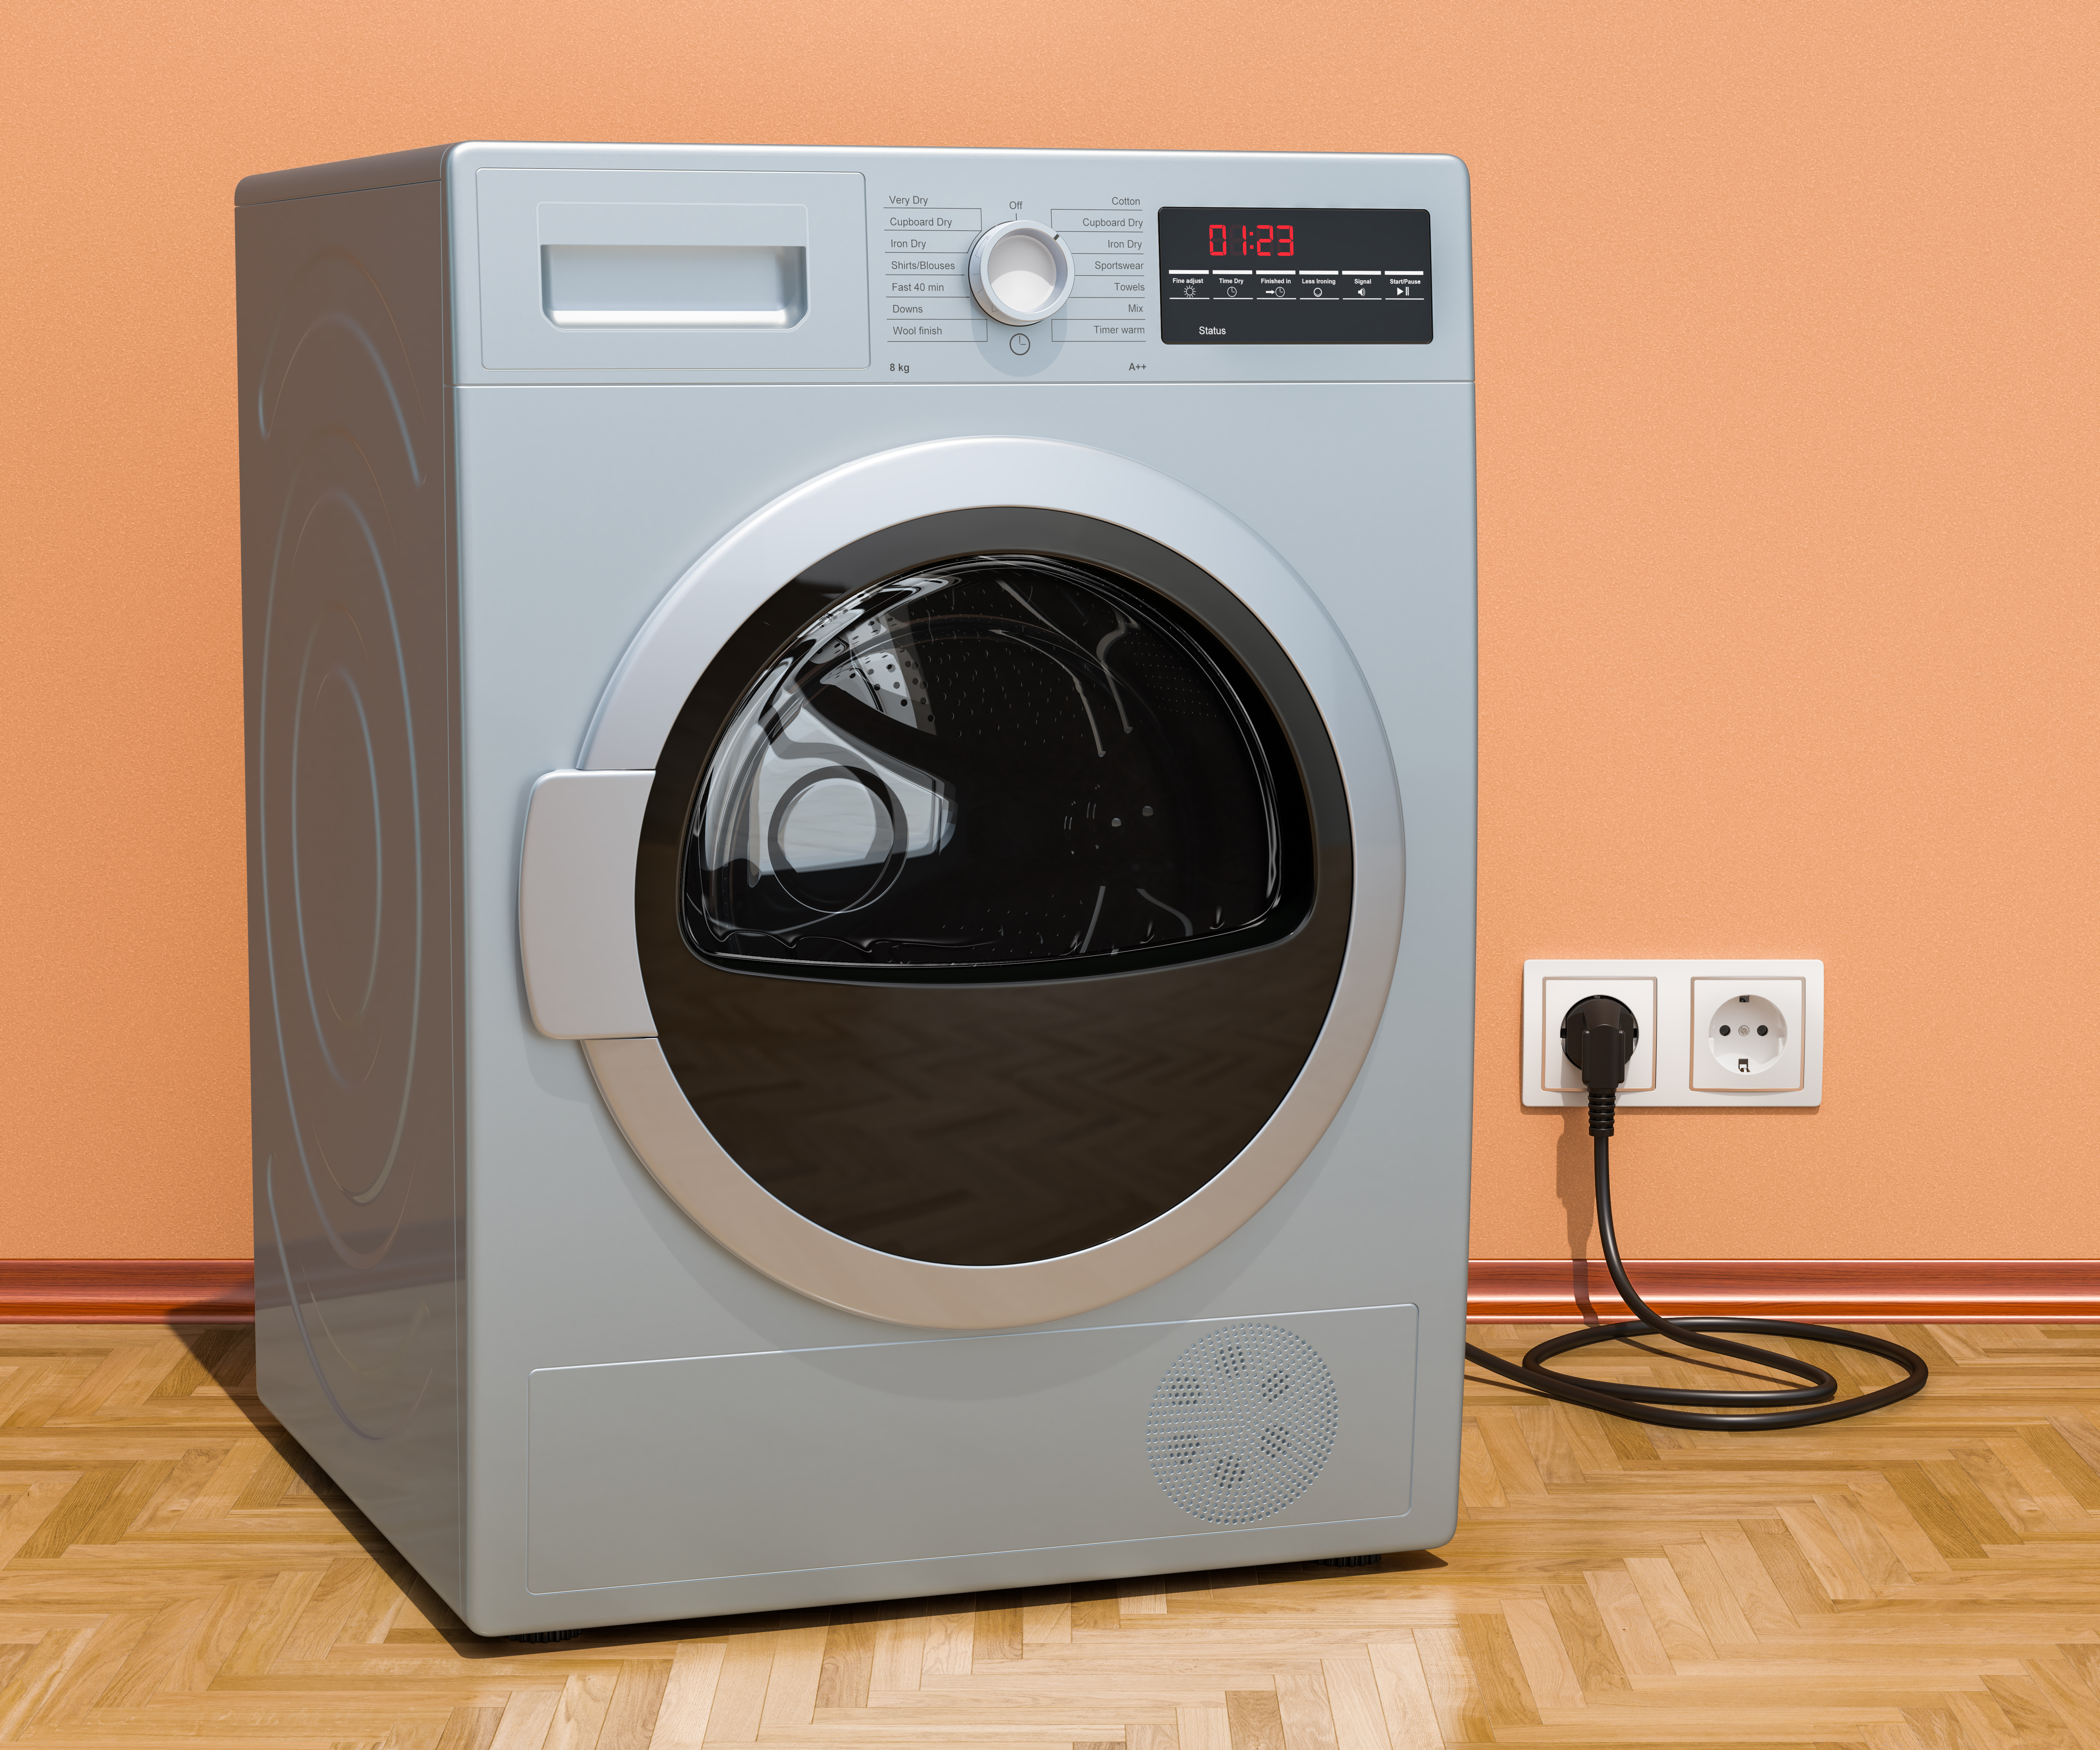 Sie können dazu beitragen, dass Ihr Wäschetrockner effizienter läuft und das Trocknen beschleunigt, indem Sie nach jedem Gebrauch Flusen entfernen und den Filter reinigen